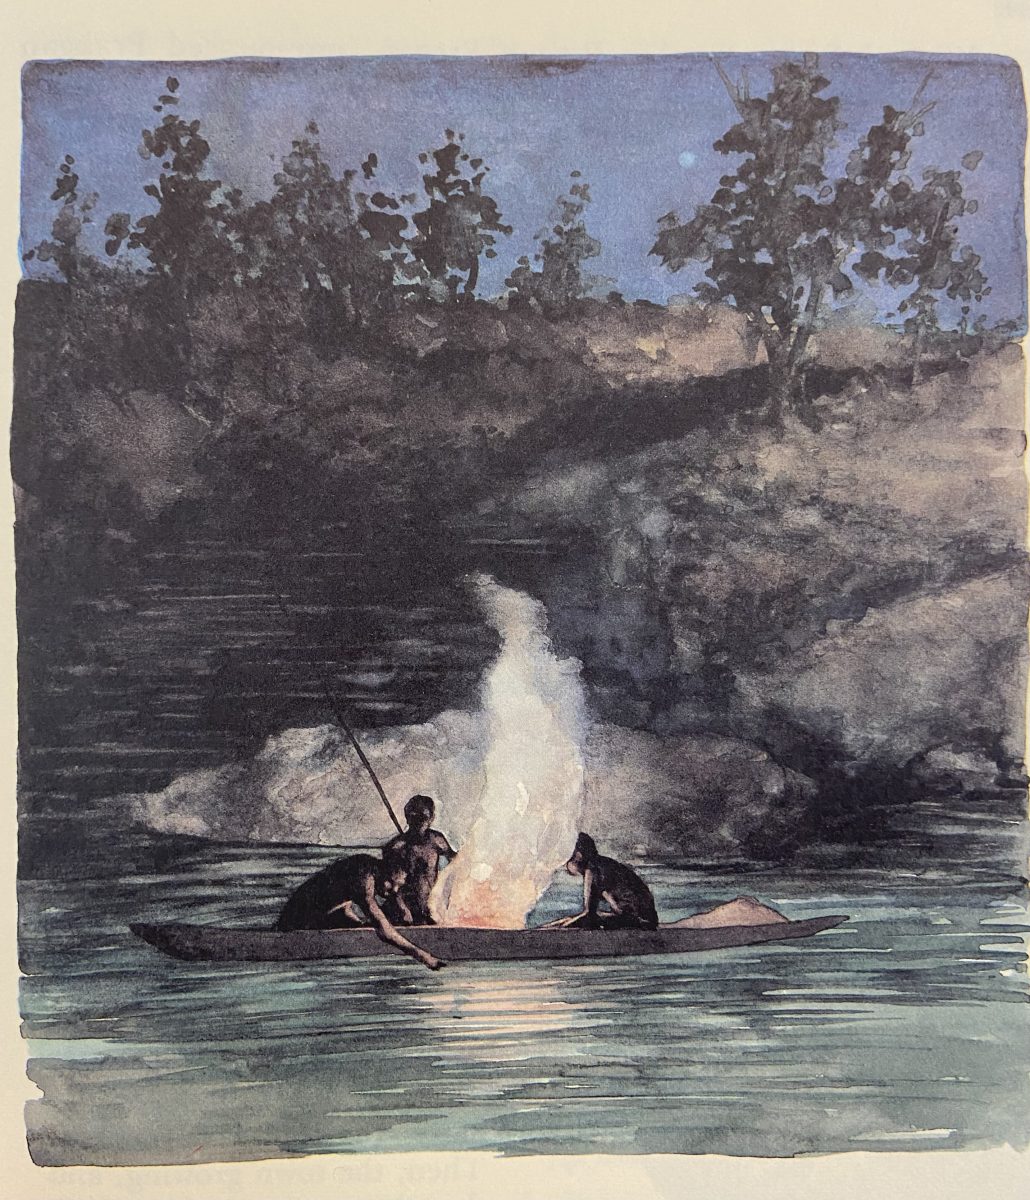 Aboriginal people fishing